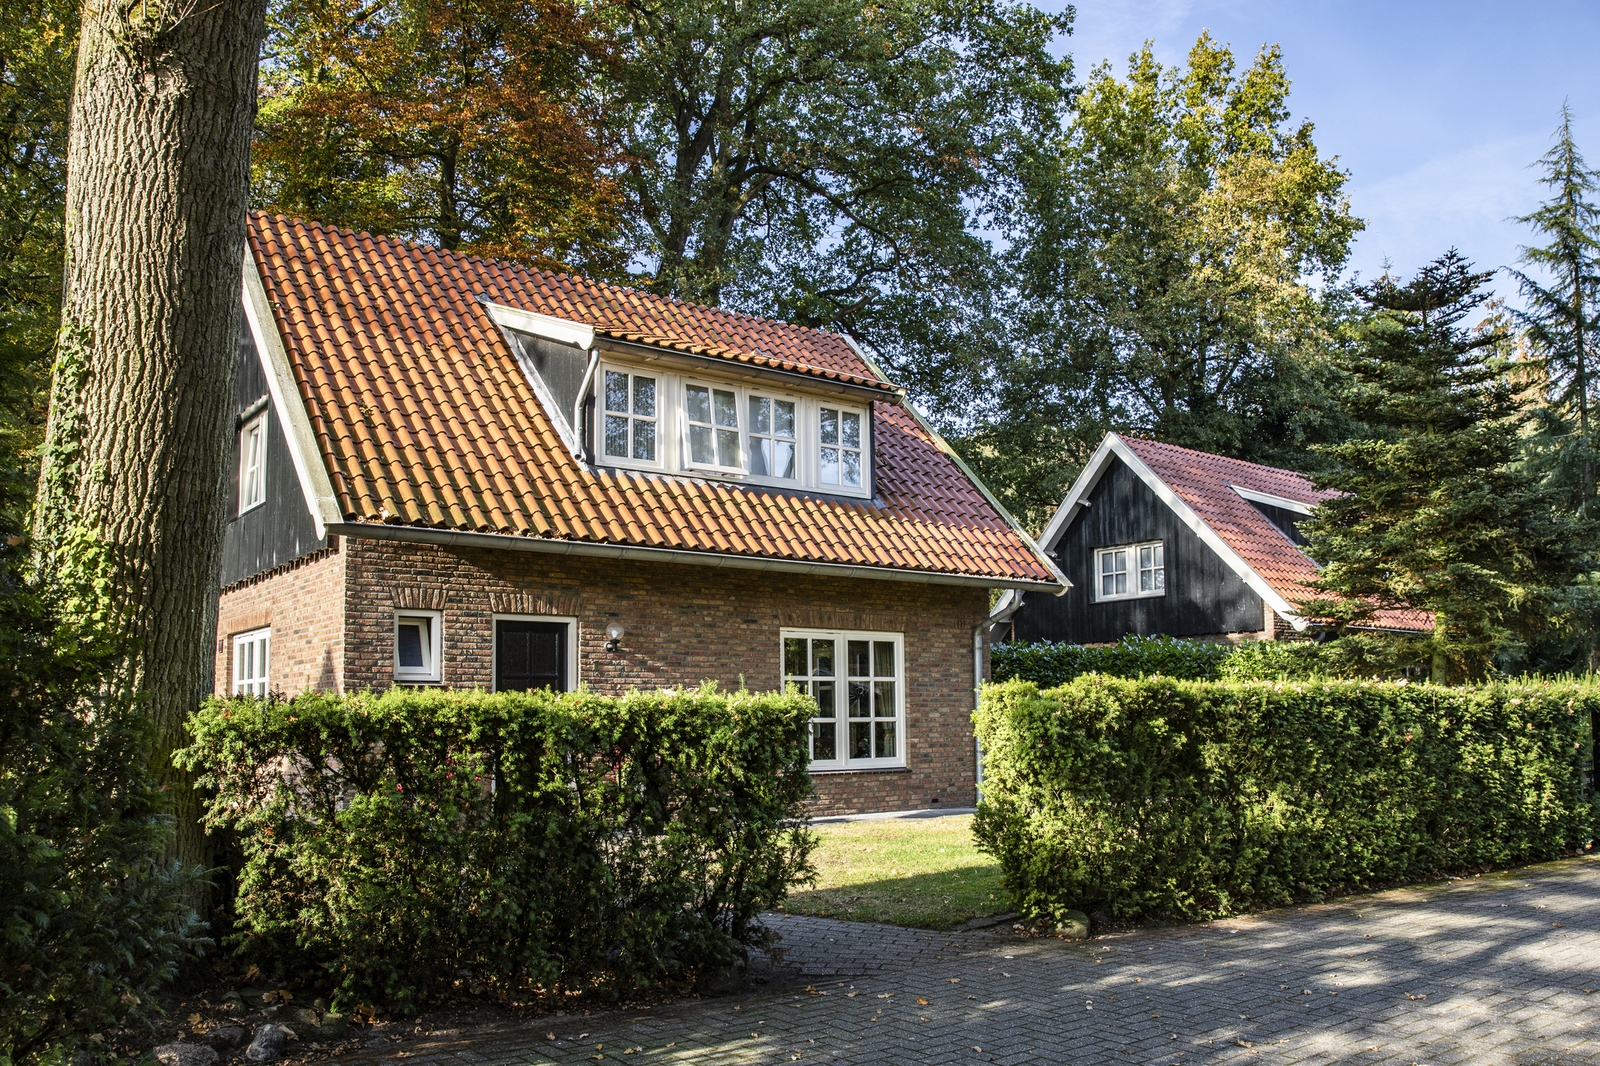 Landgoed Losser - vakantiehuis de Regenboog in Twente - Nederland - Overijssel - Losser